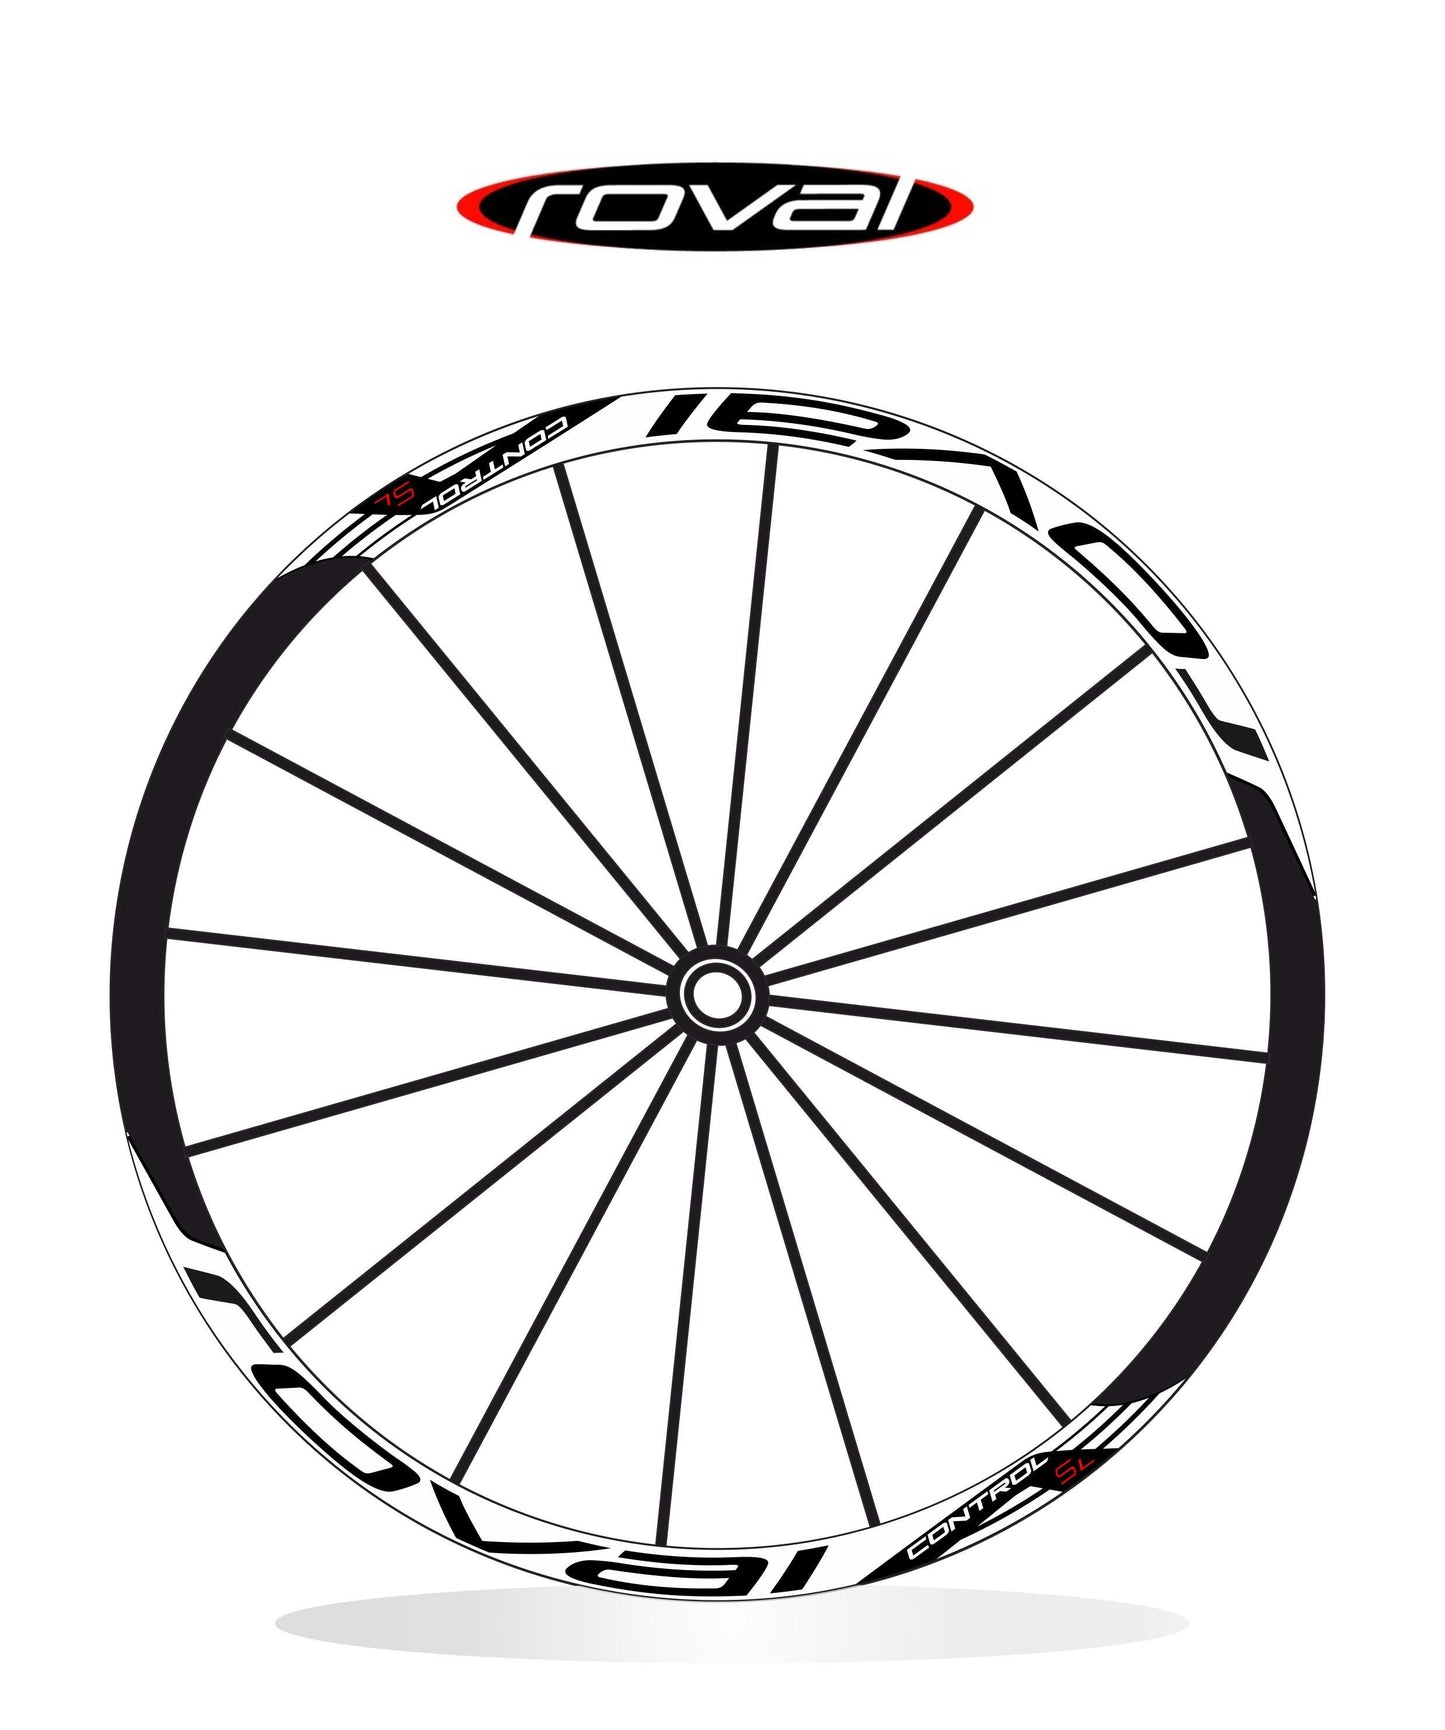 Roval Control Sl carbon 2014 - adesivi per ruote/cerchioni bici